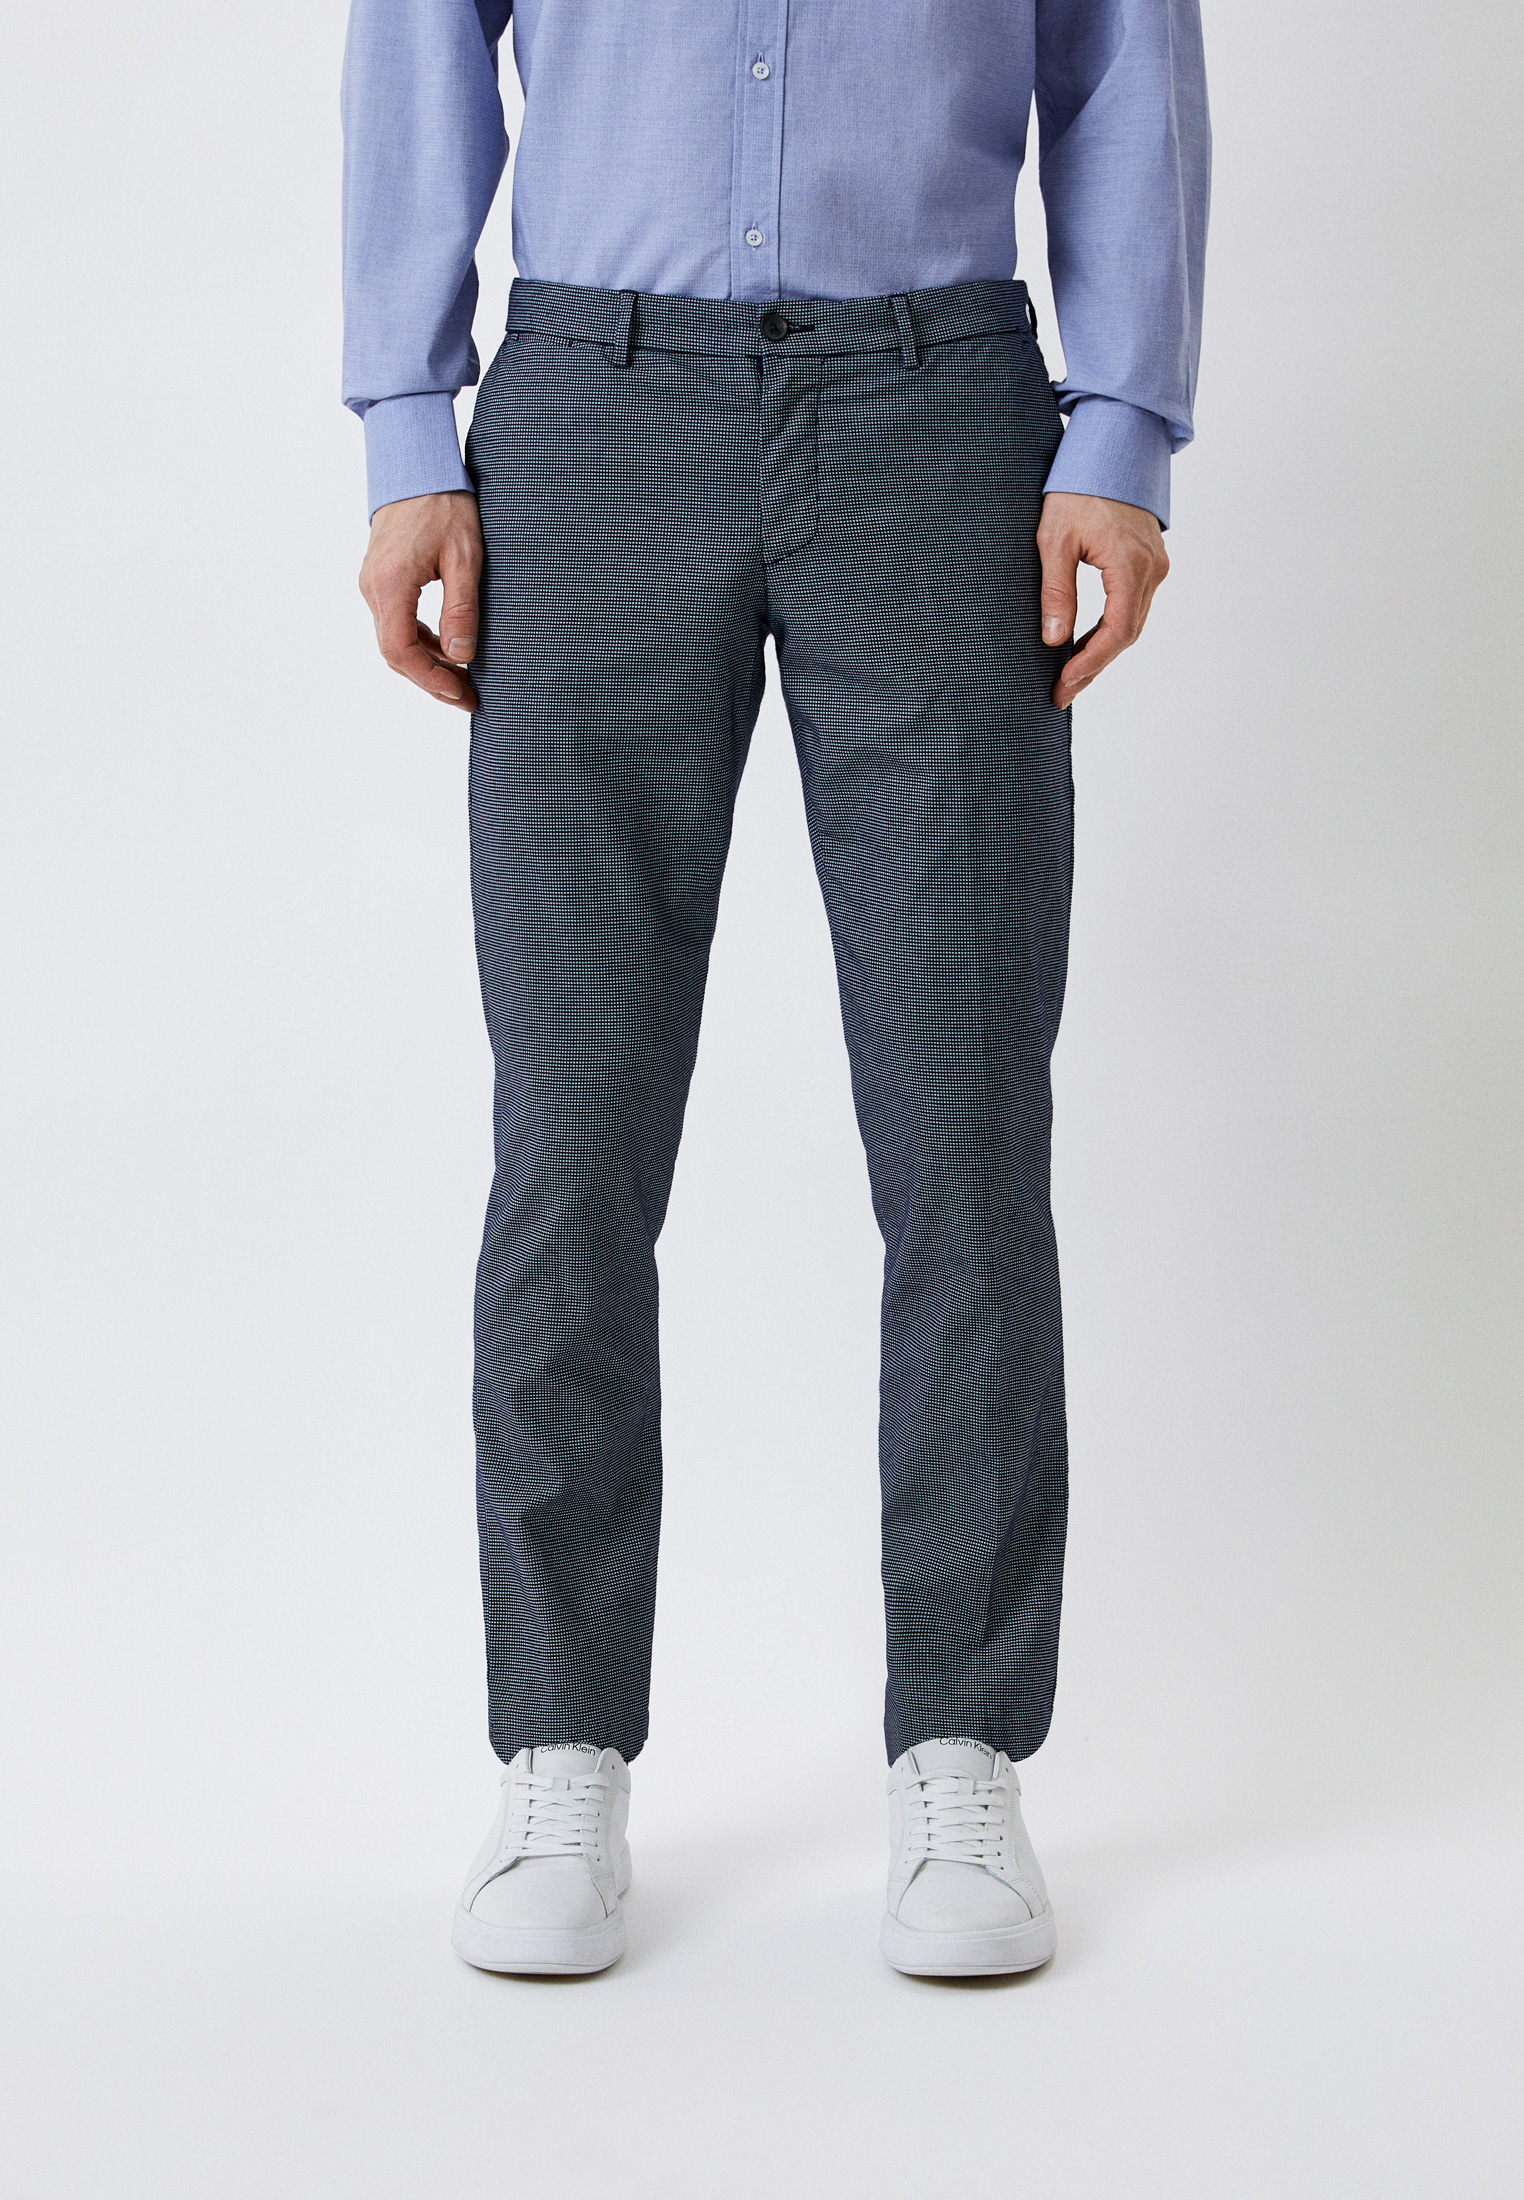 Мужские повседневные брюки Trussardi (Труссарди) 52P00000-1T002335-H-001: изображение 1